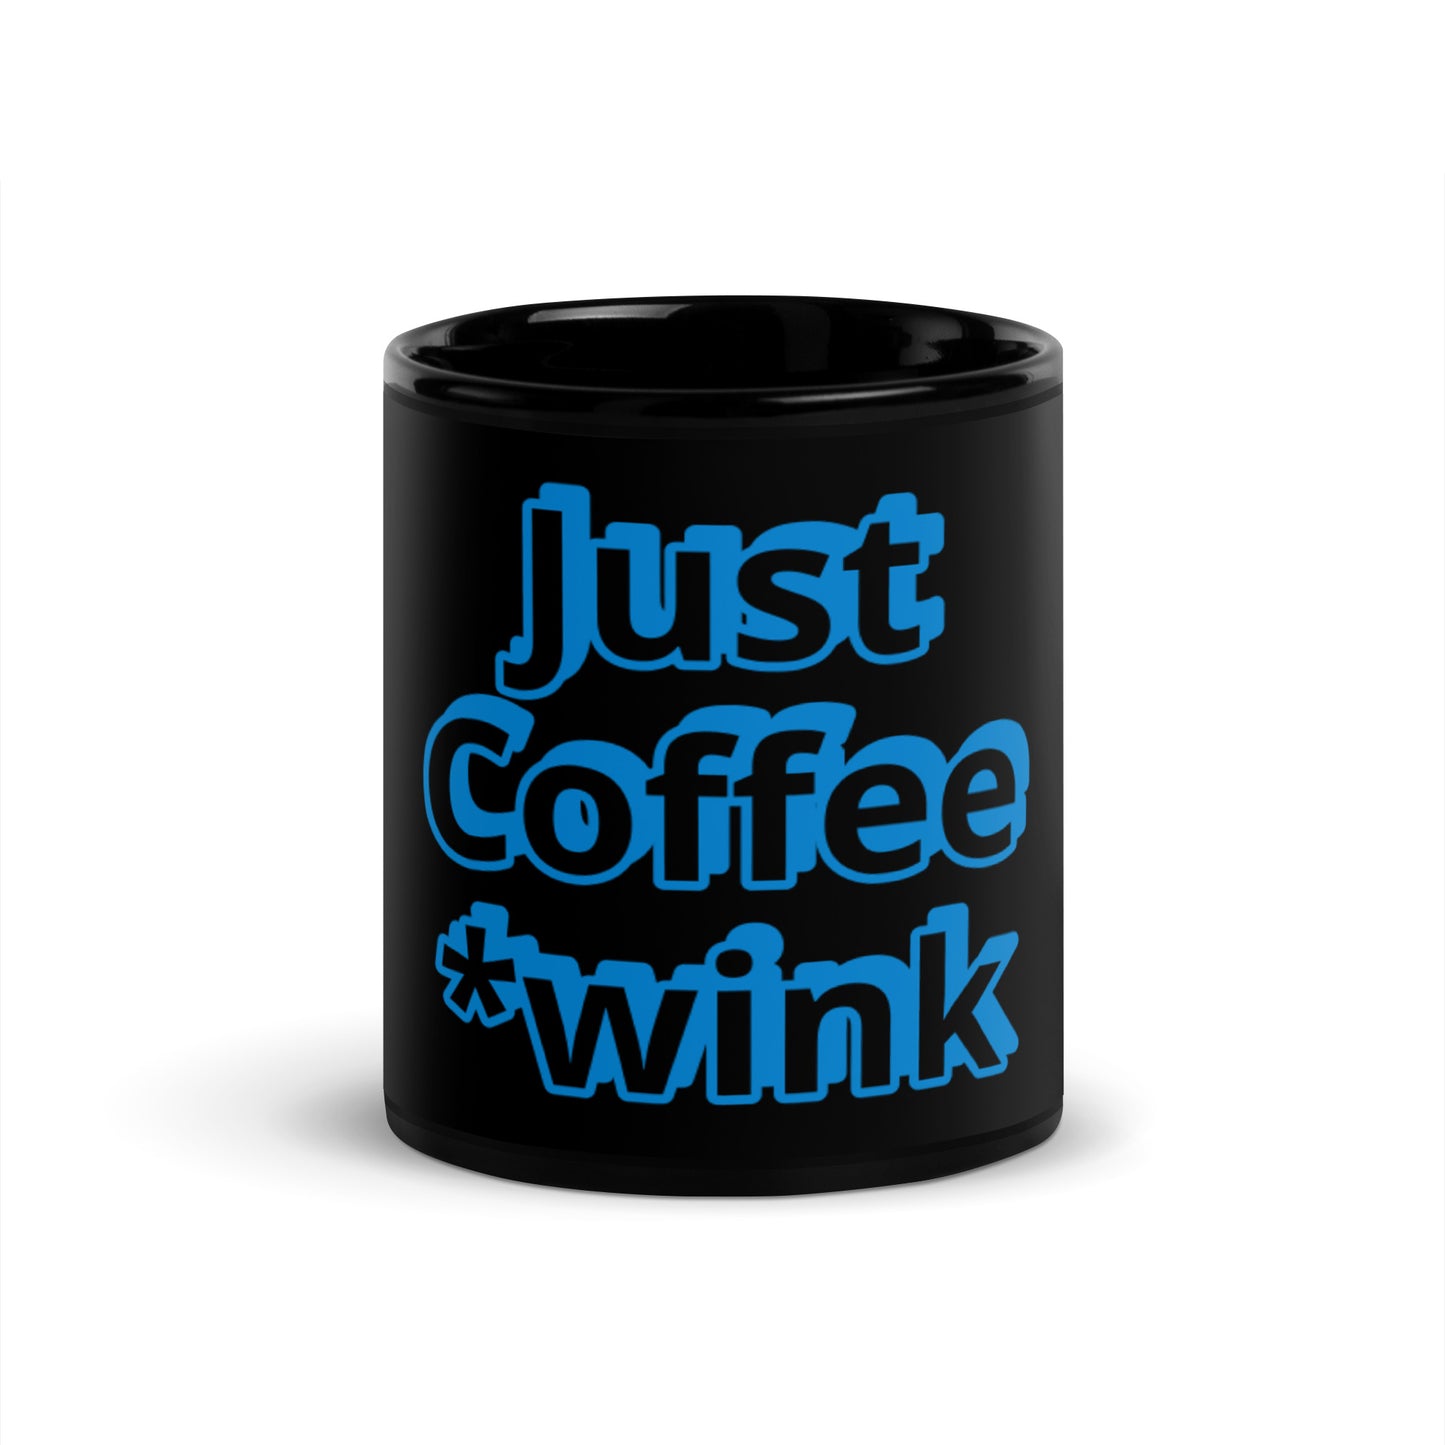 Just Coffee Joke Black Mug